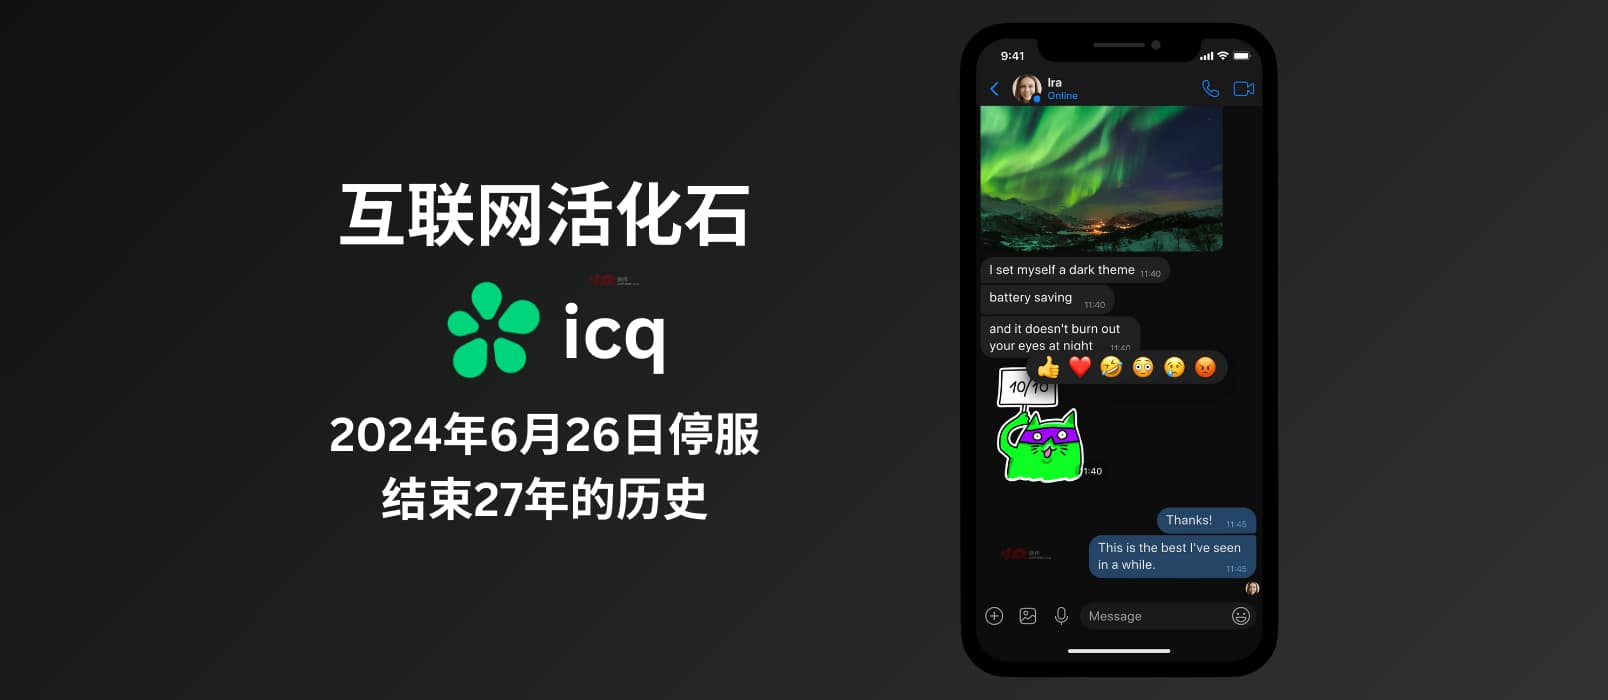 互联网活化石 ICQ 将于 2024年6月26日起停止服务